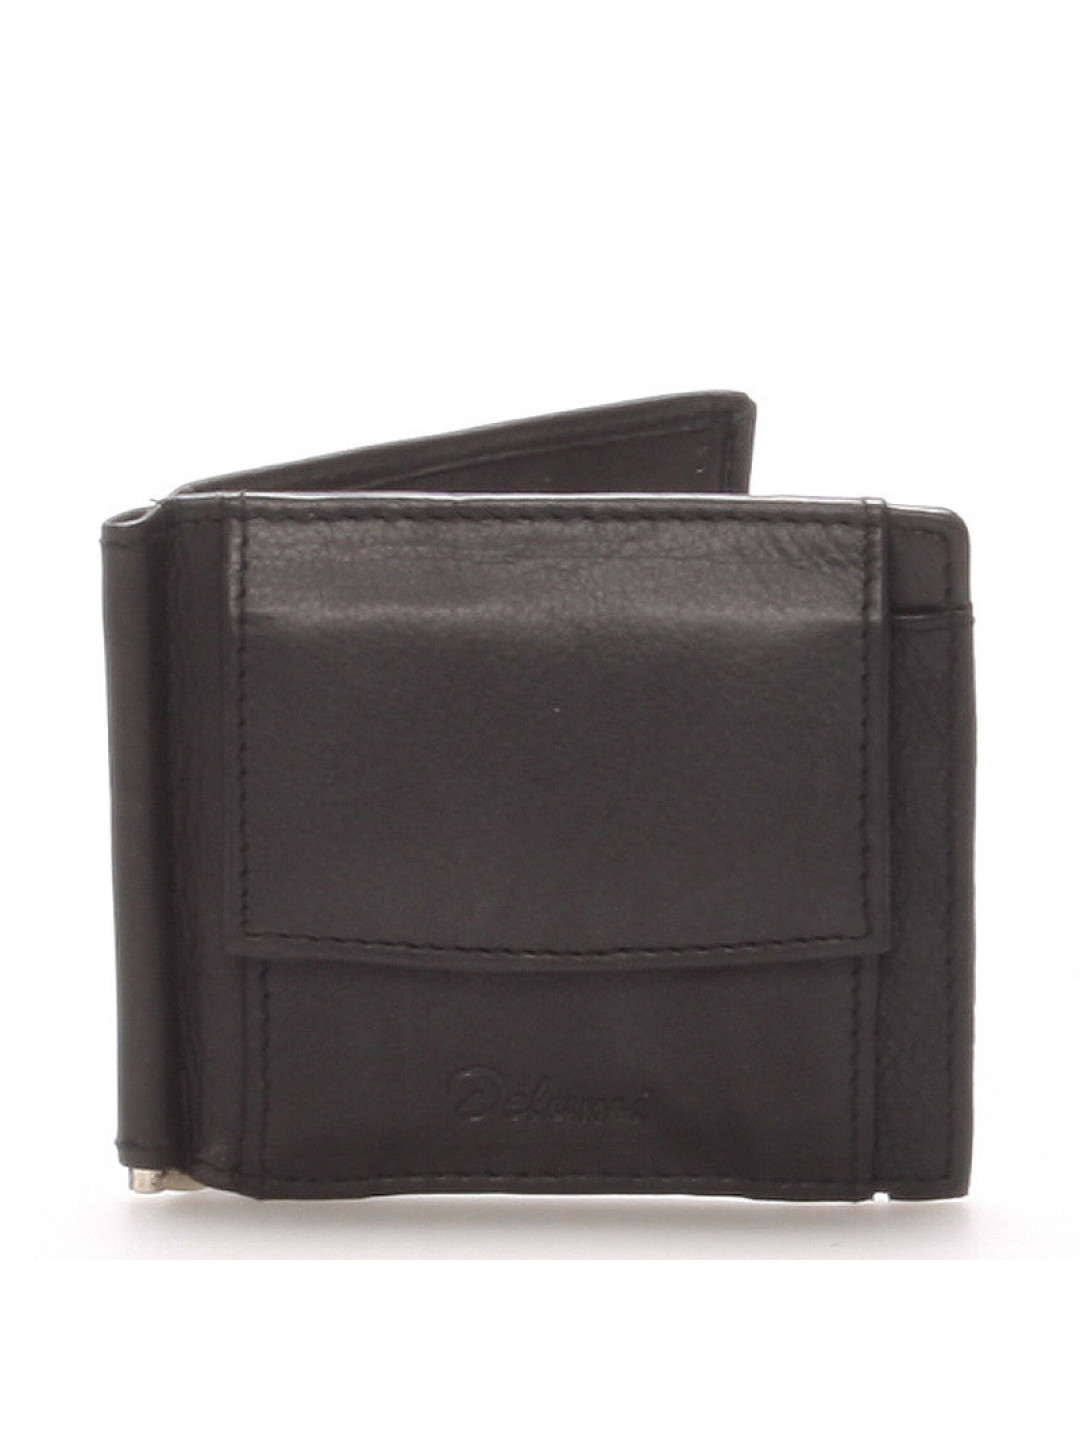 Menší pánská kožená peněženka Delami dolarovka černá